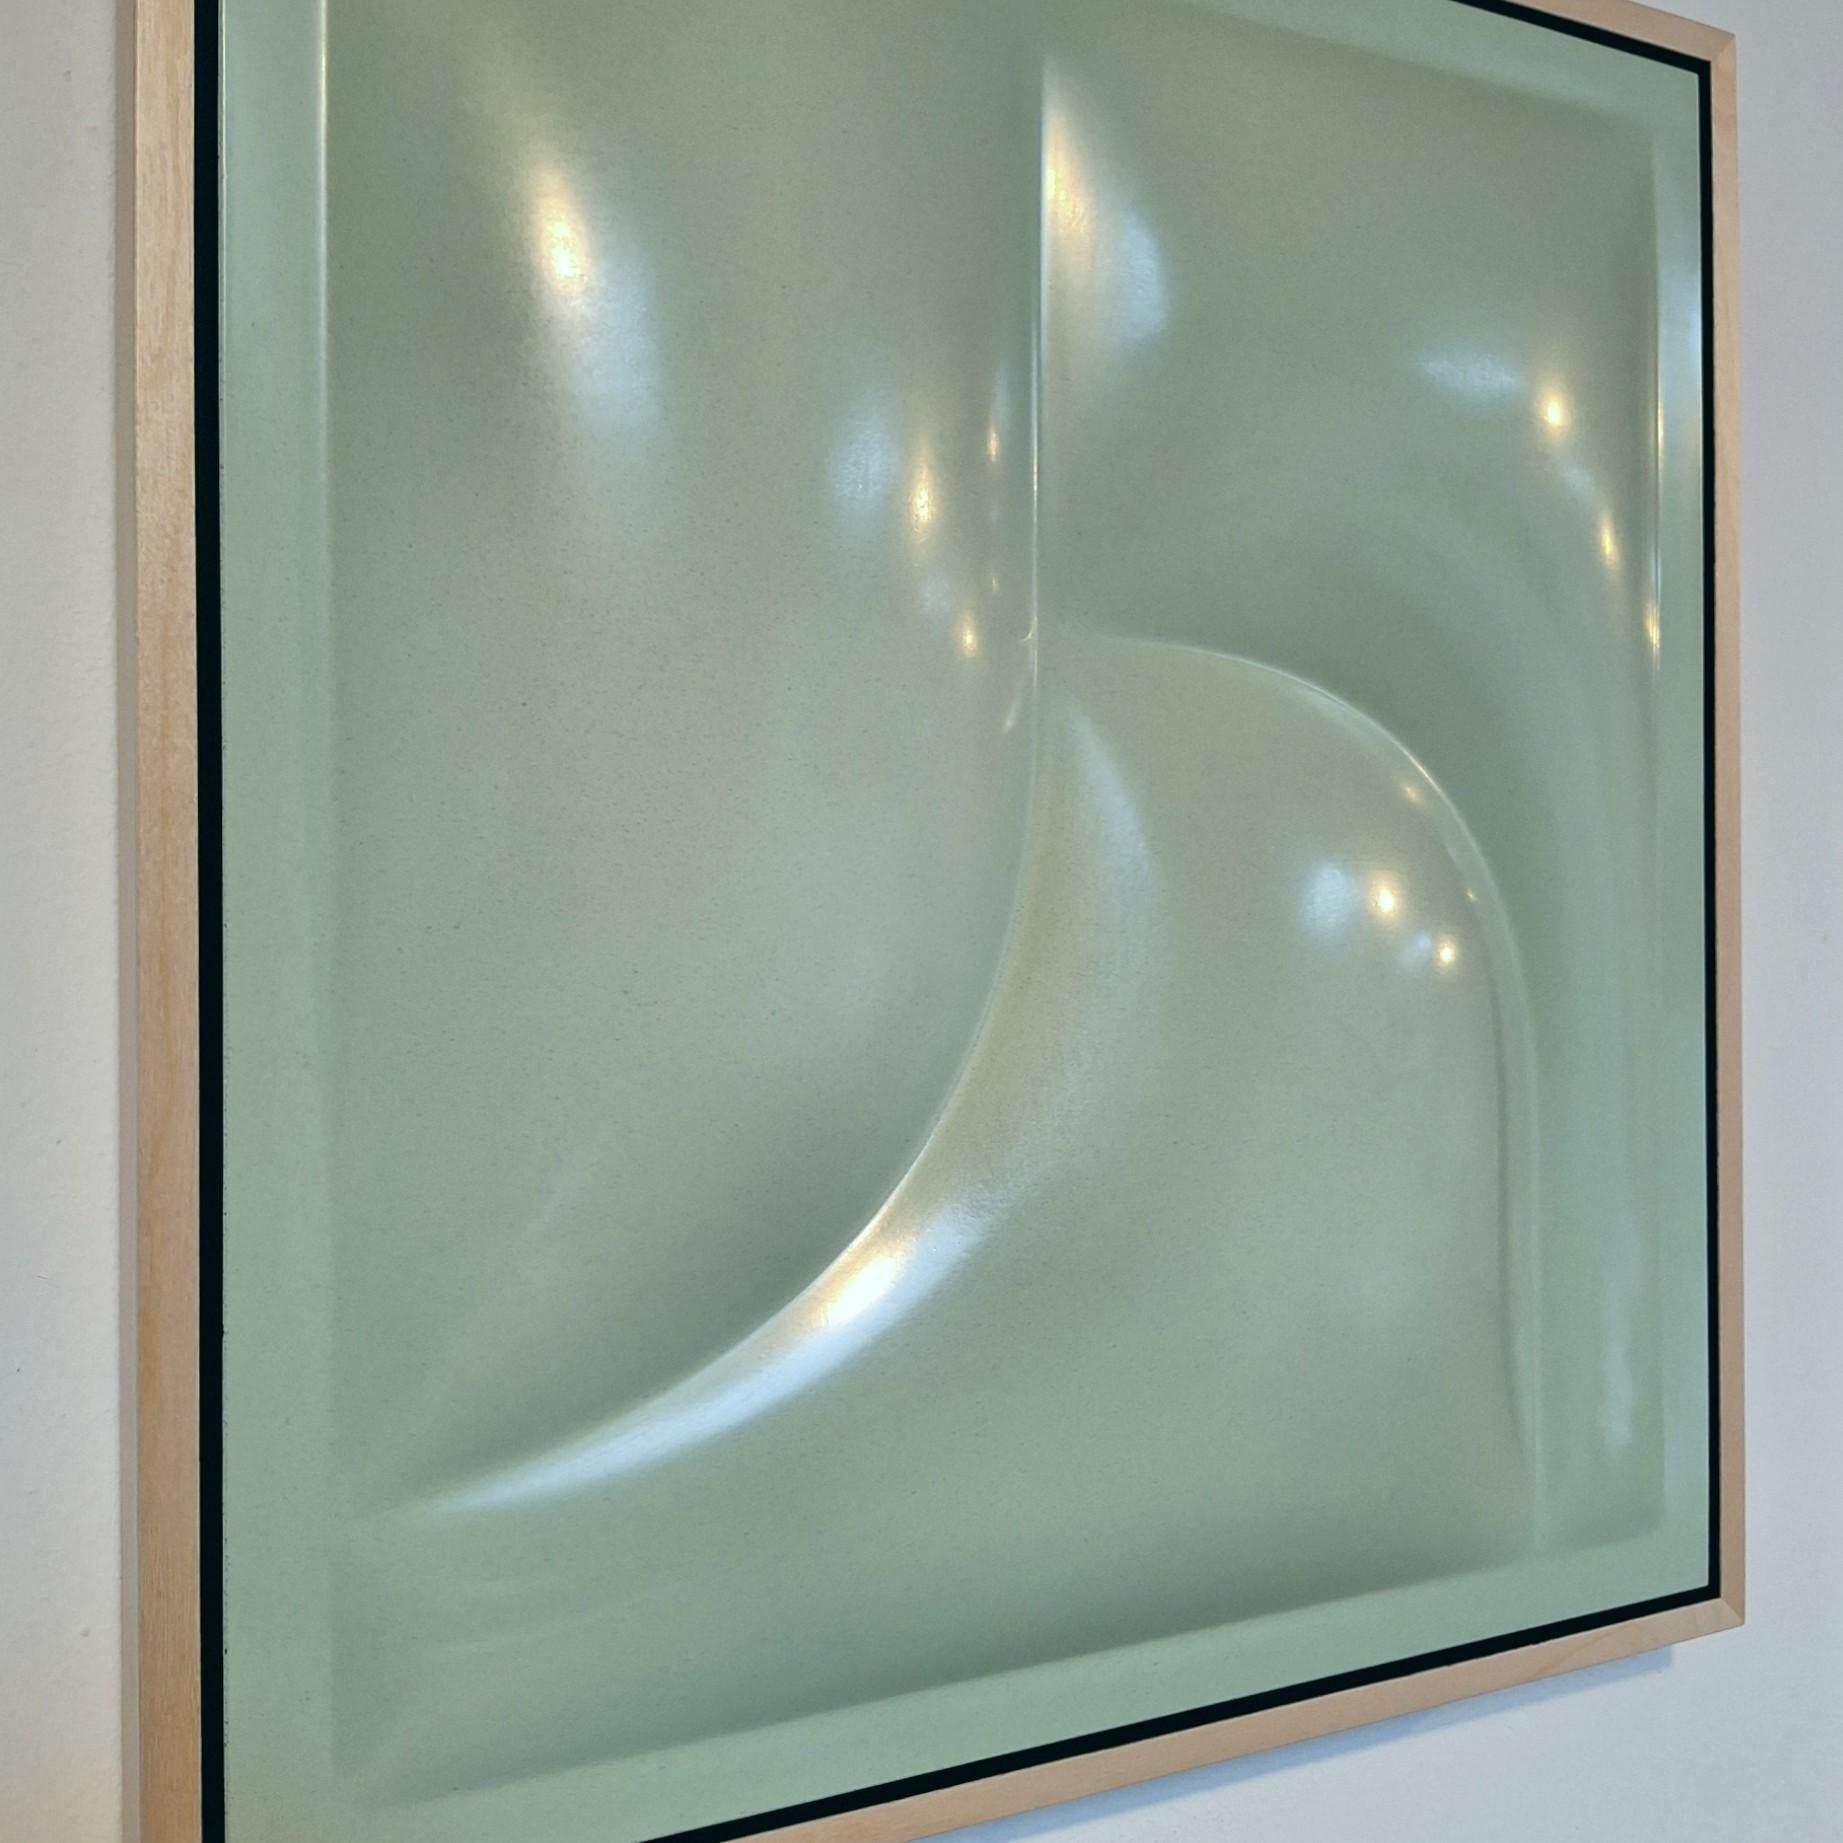 Covered Parts 2412 - peinture abstraite géométrique contemporaine moderne relief - Contemporain Sculpture par Sander Martijn Jonker